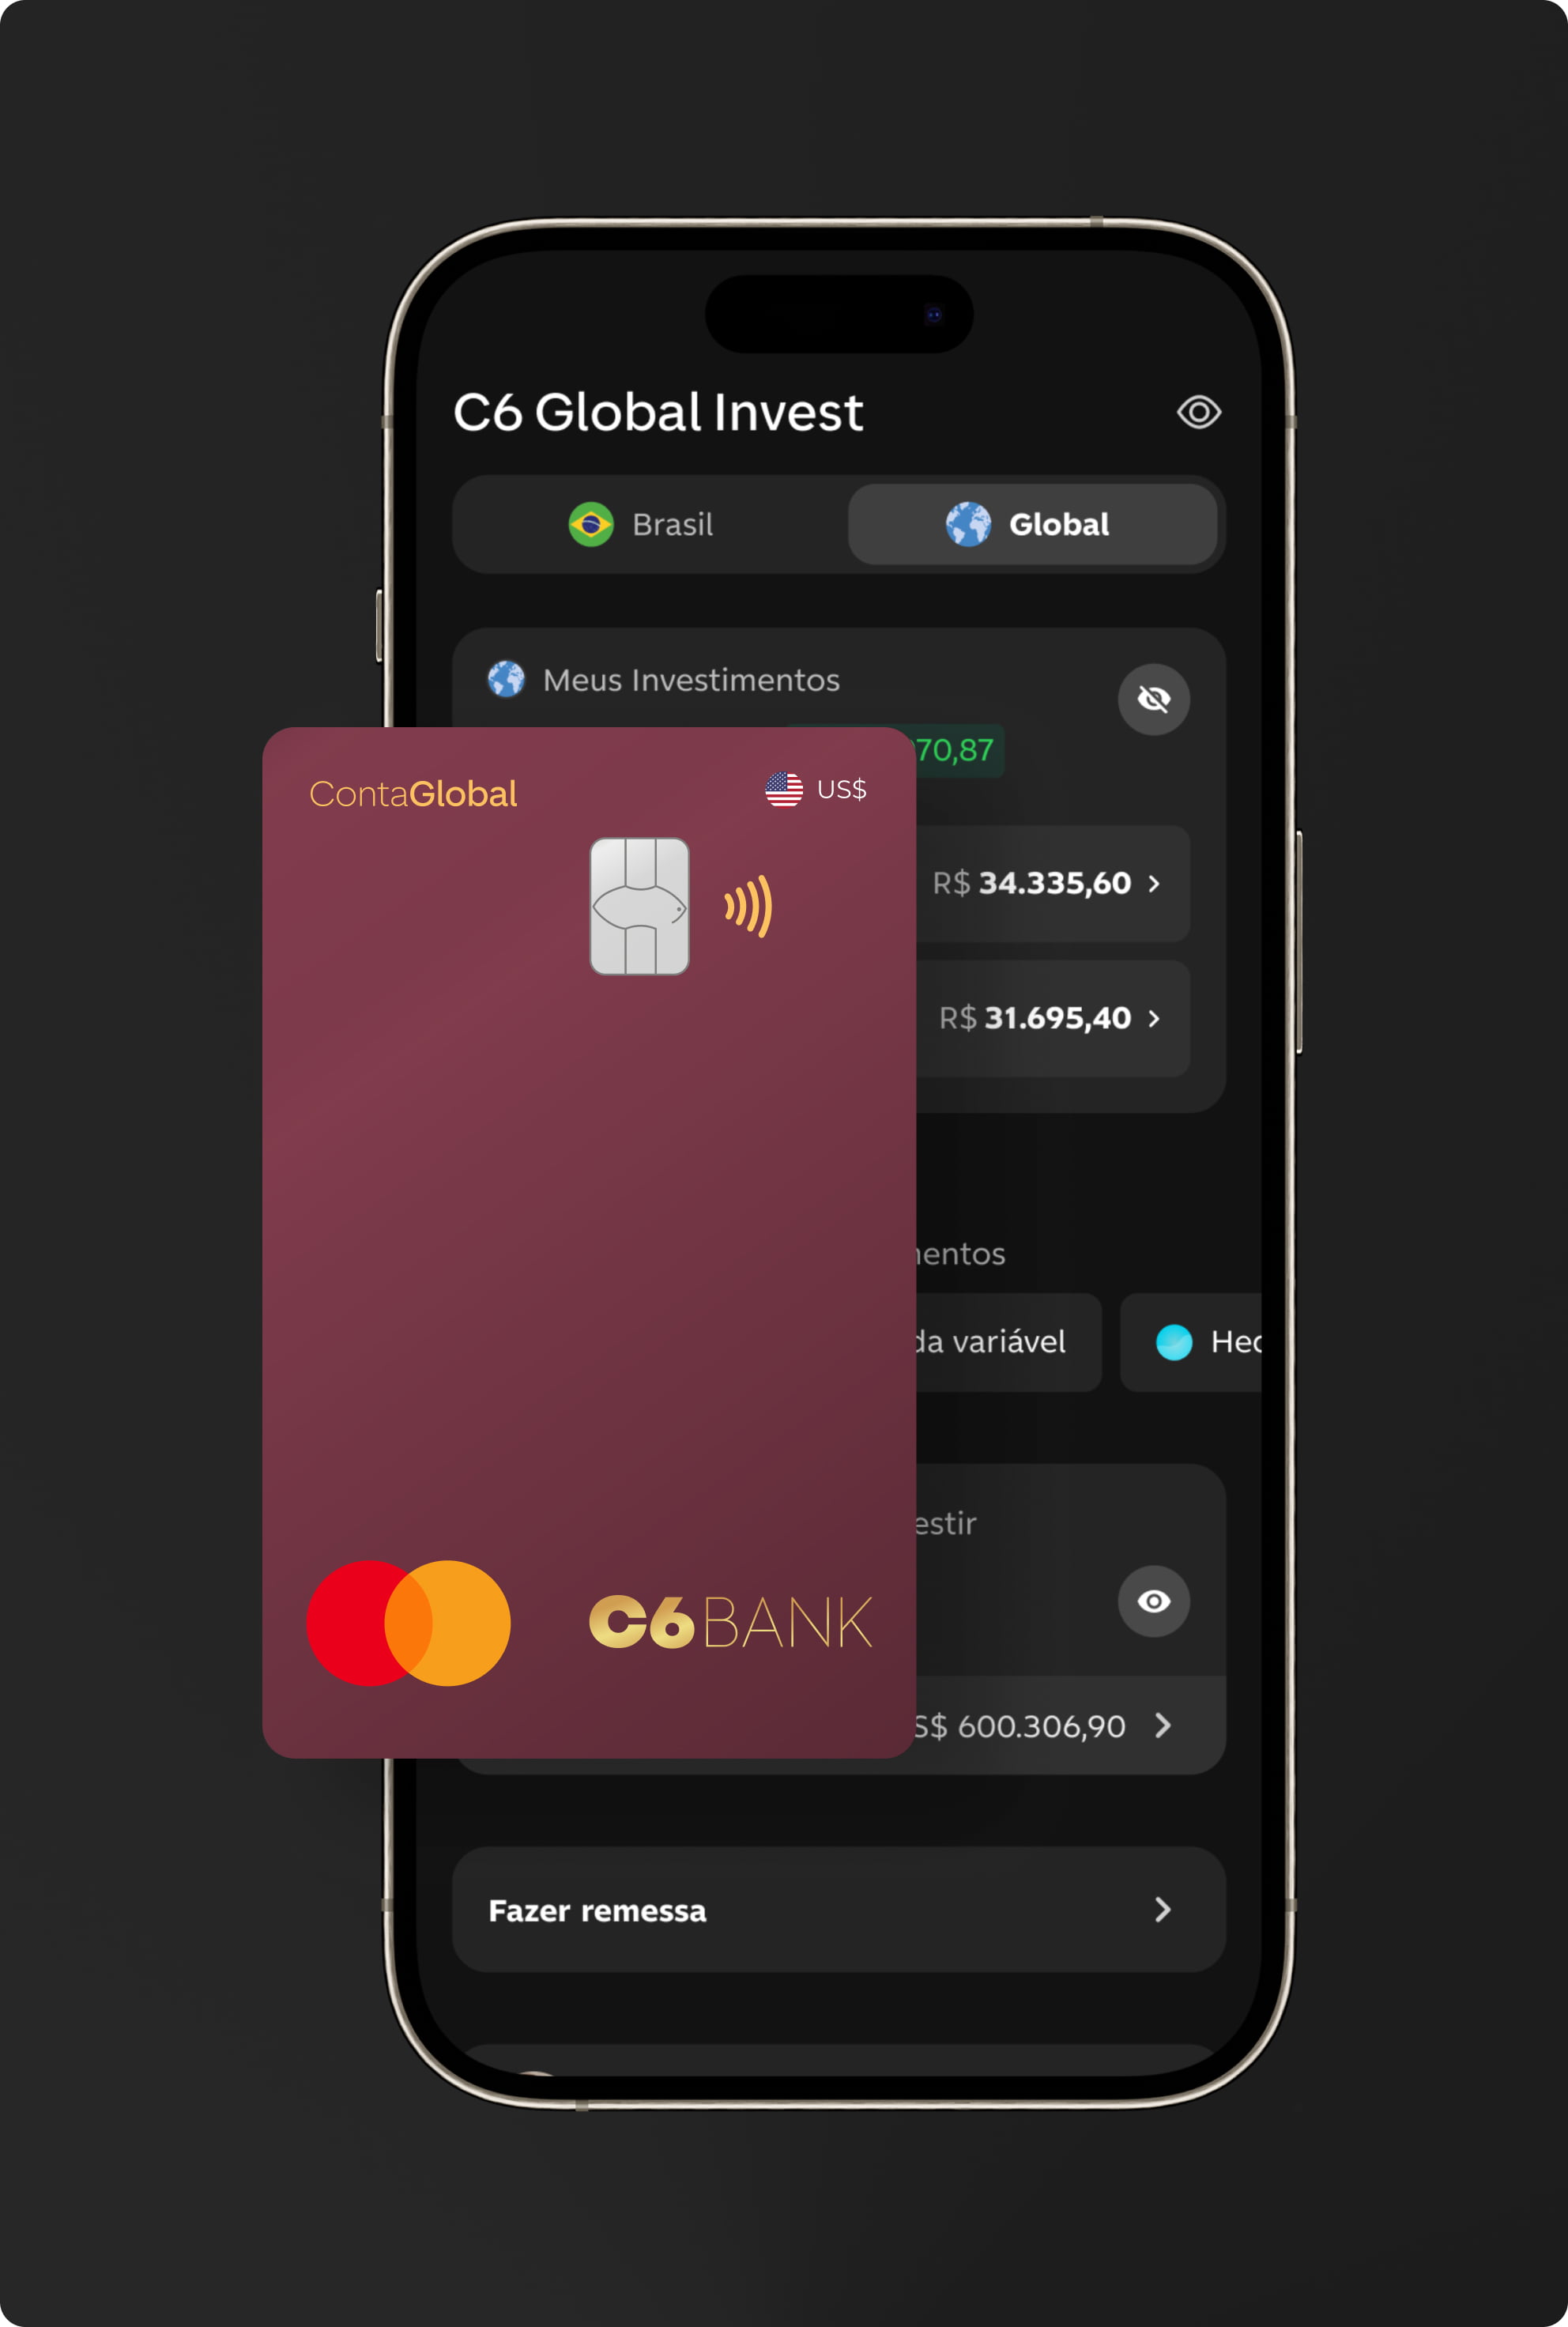 Celular com app do C6 Bank aberto na tela de C6 Global Invest com cartão C6 conta global ao lado